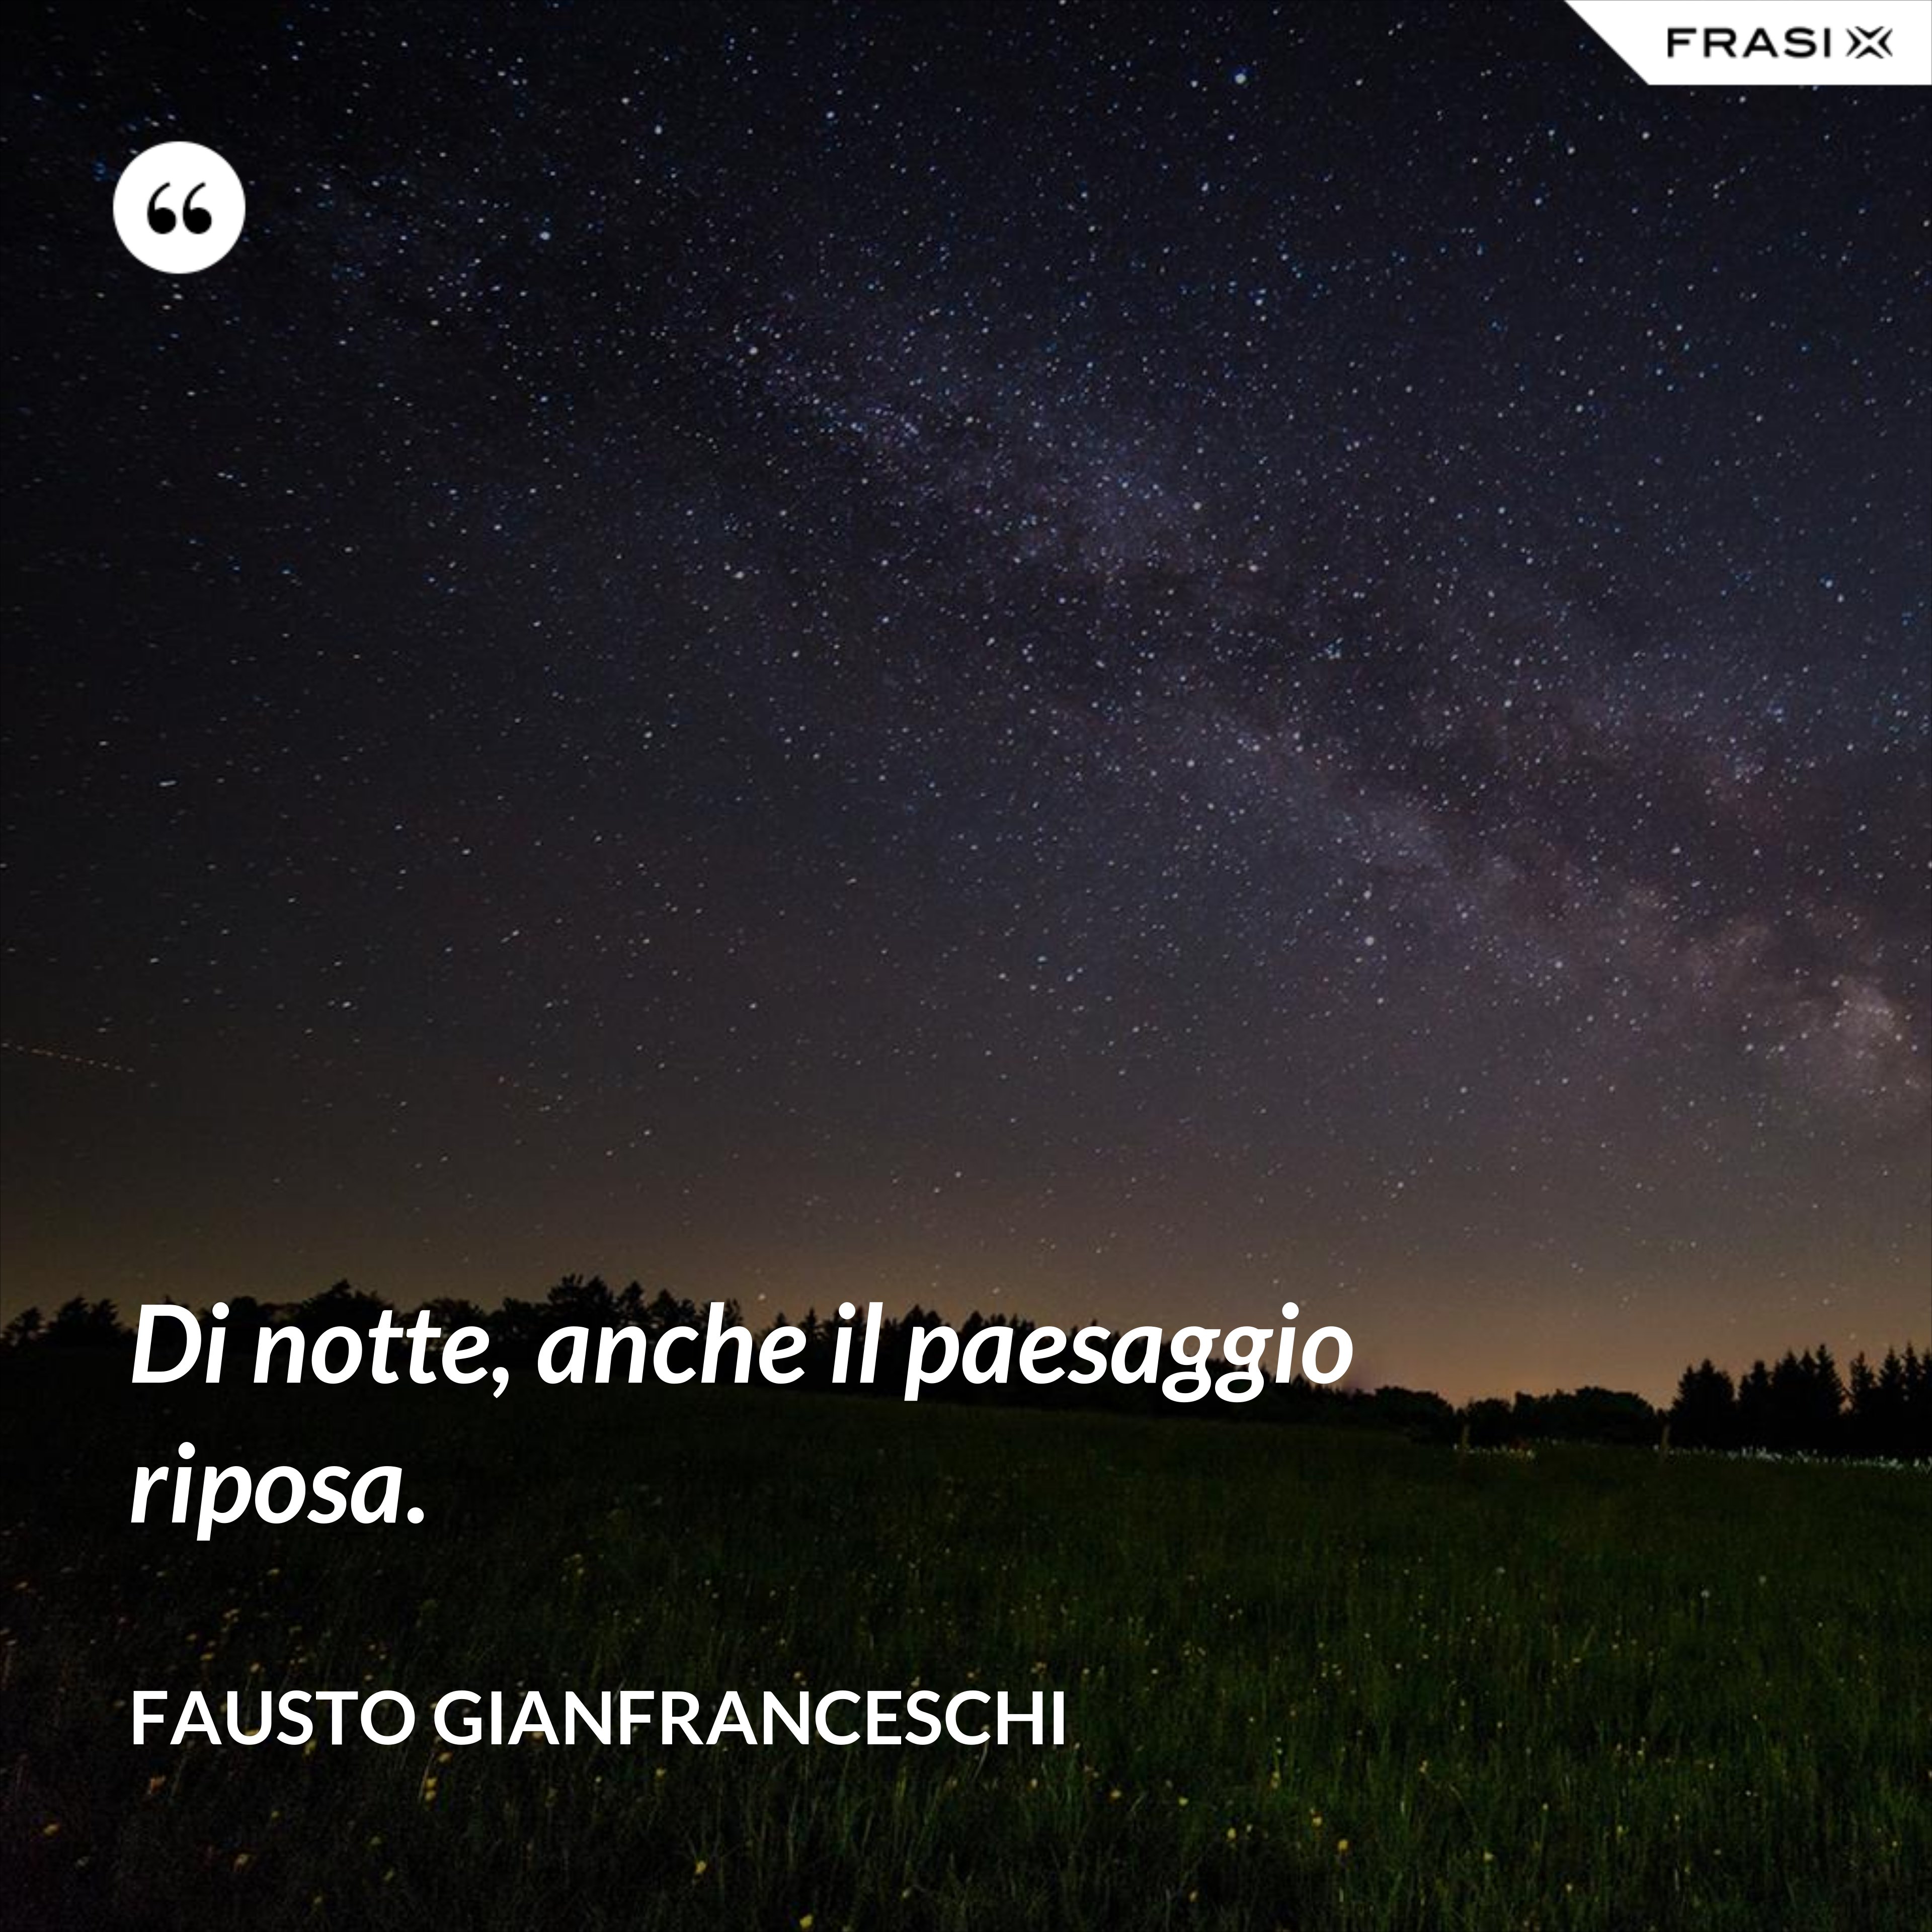 Di notte, anche il paesaggio riposa. - Fausto Gianfranceschi